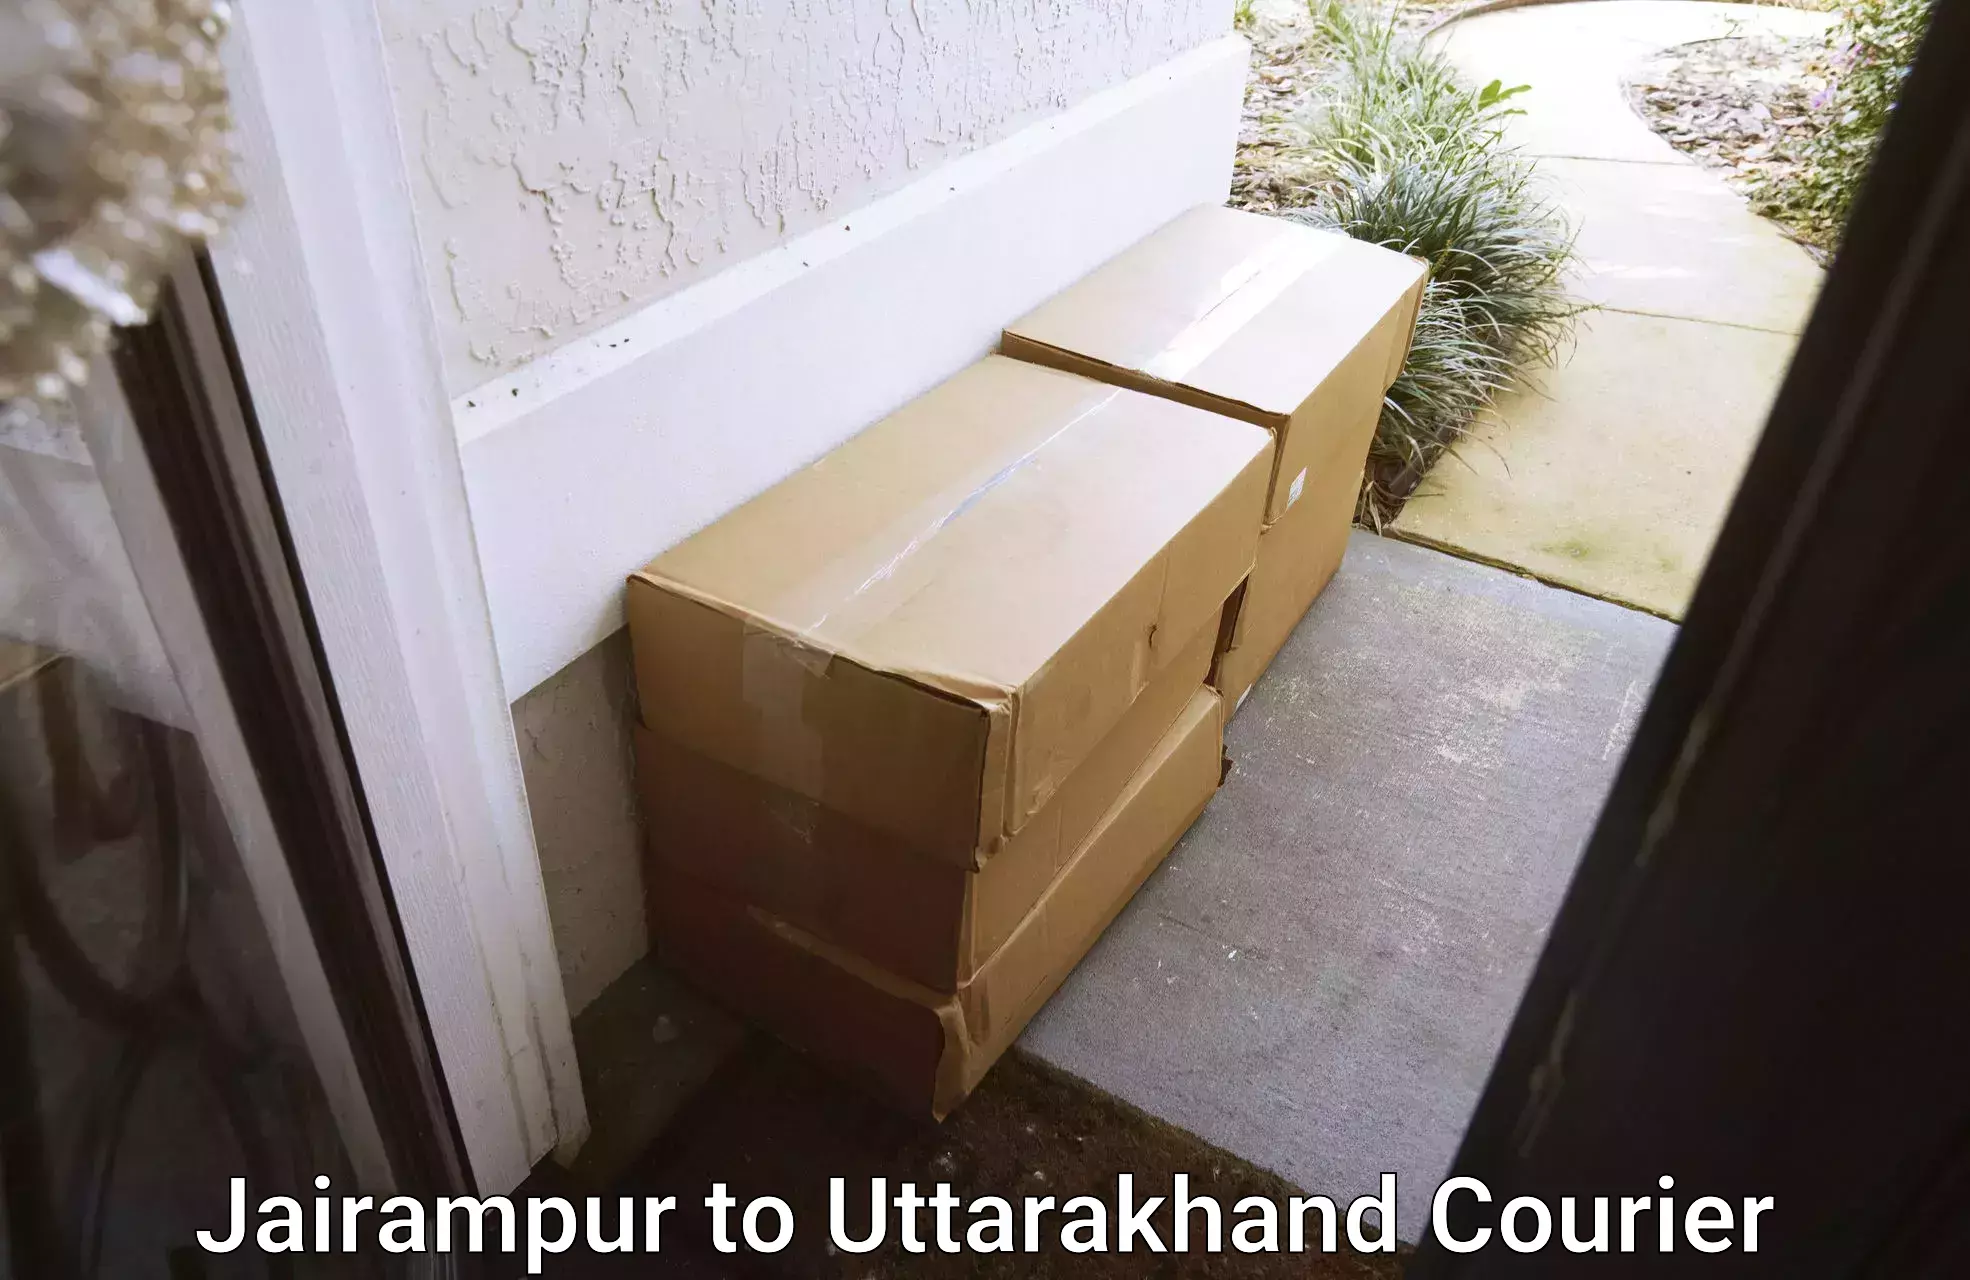 24/7 courier service Jairampur to Srinagar Pauri Garhwal